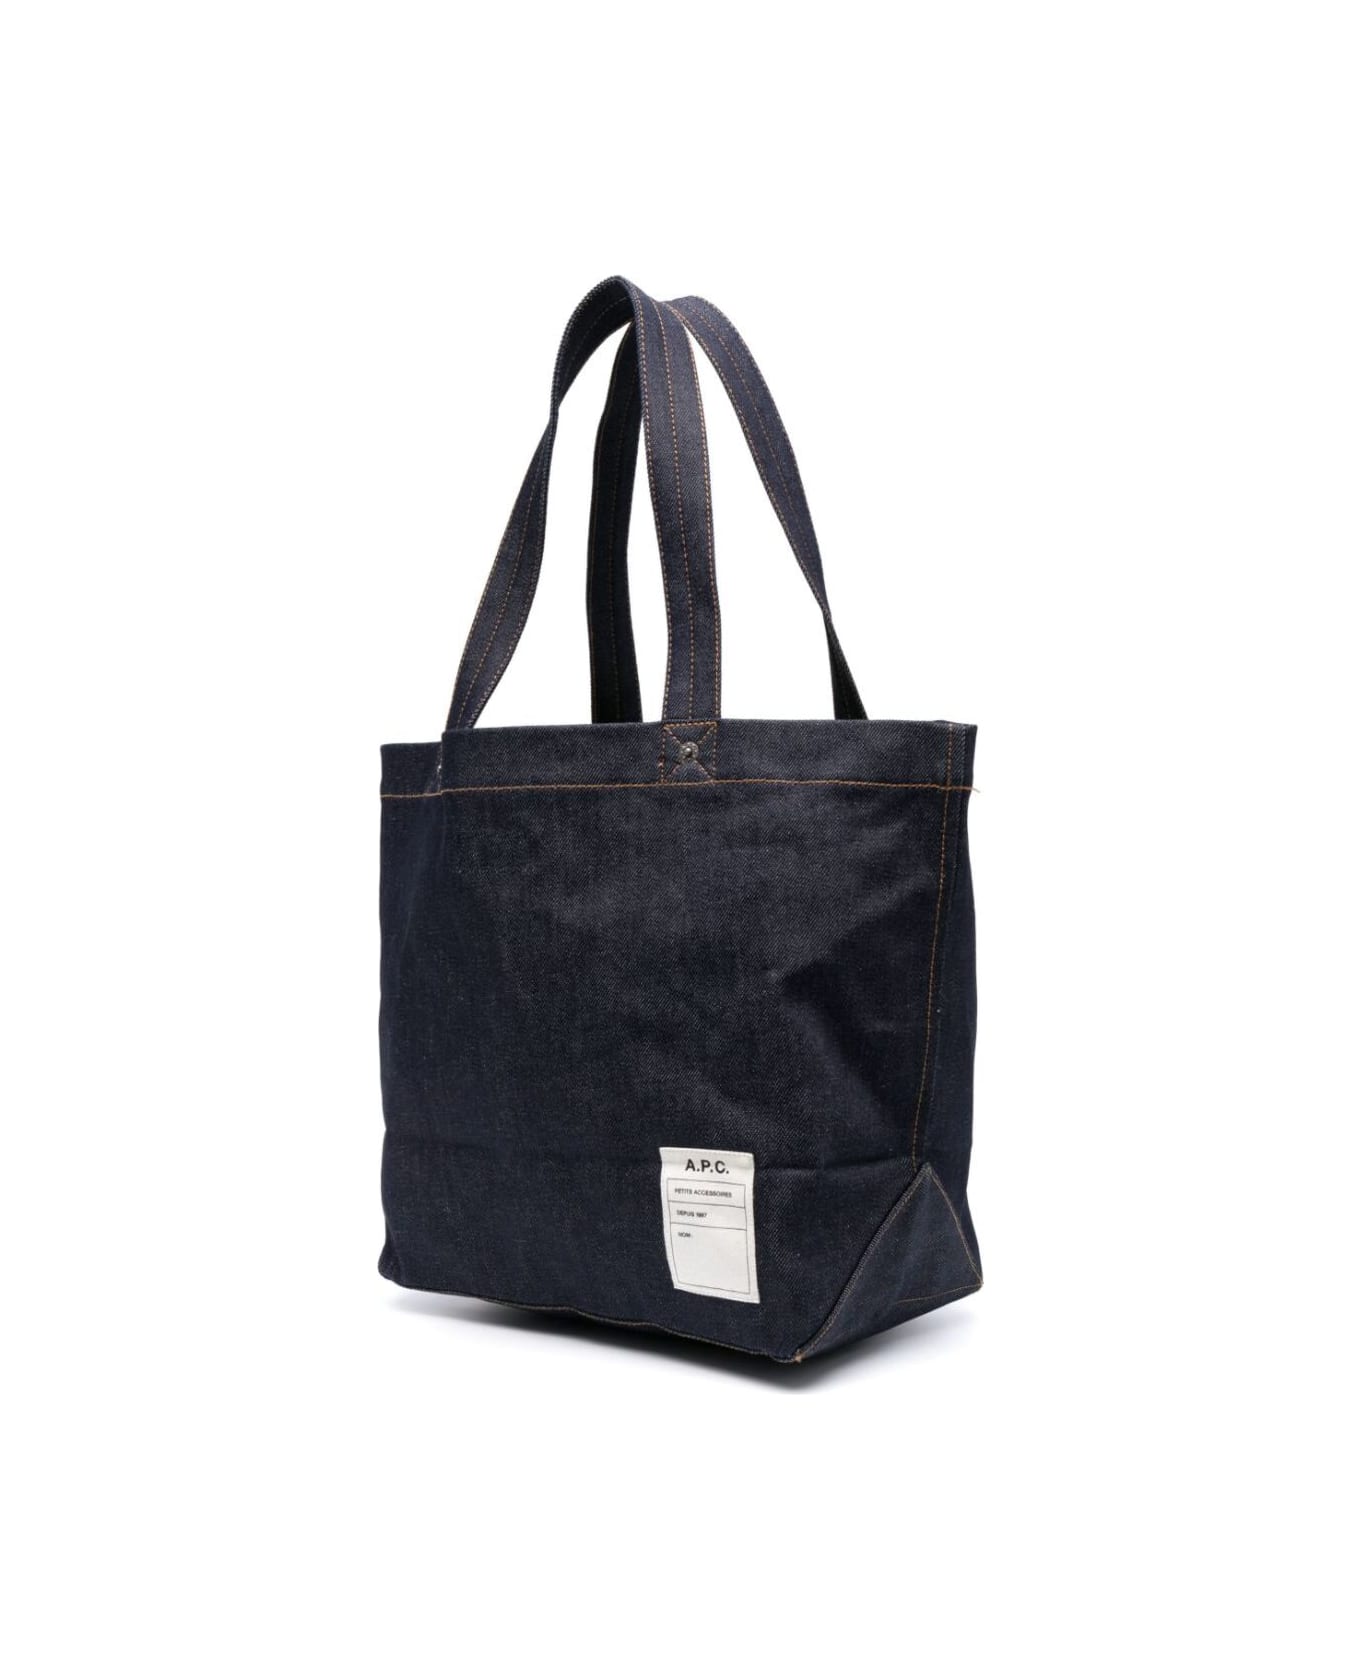 A.P.C. Thiais Shopping Bag - BLUE